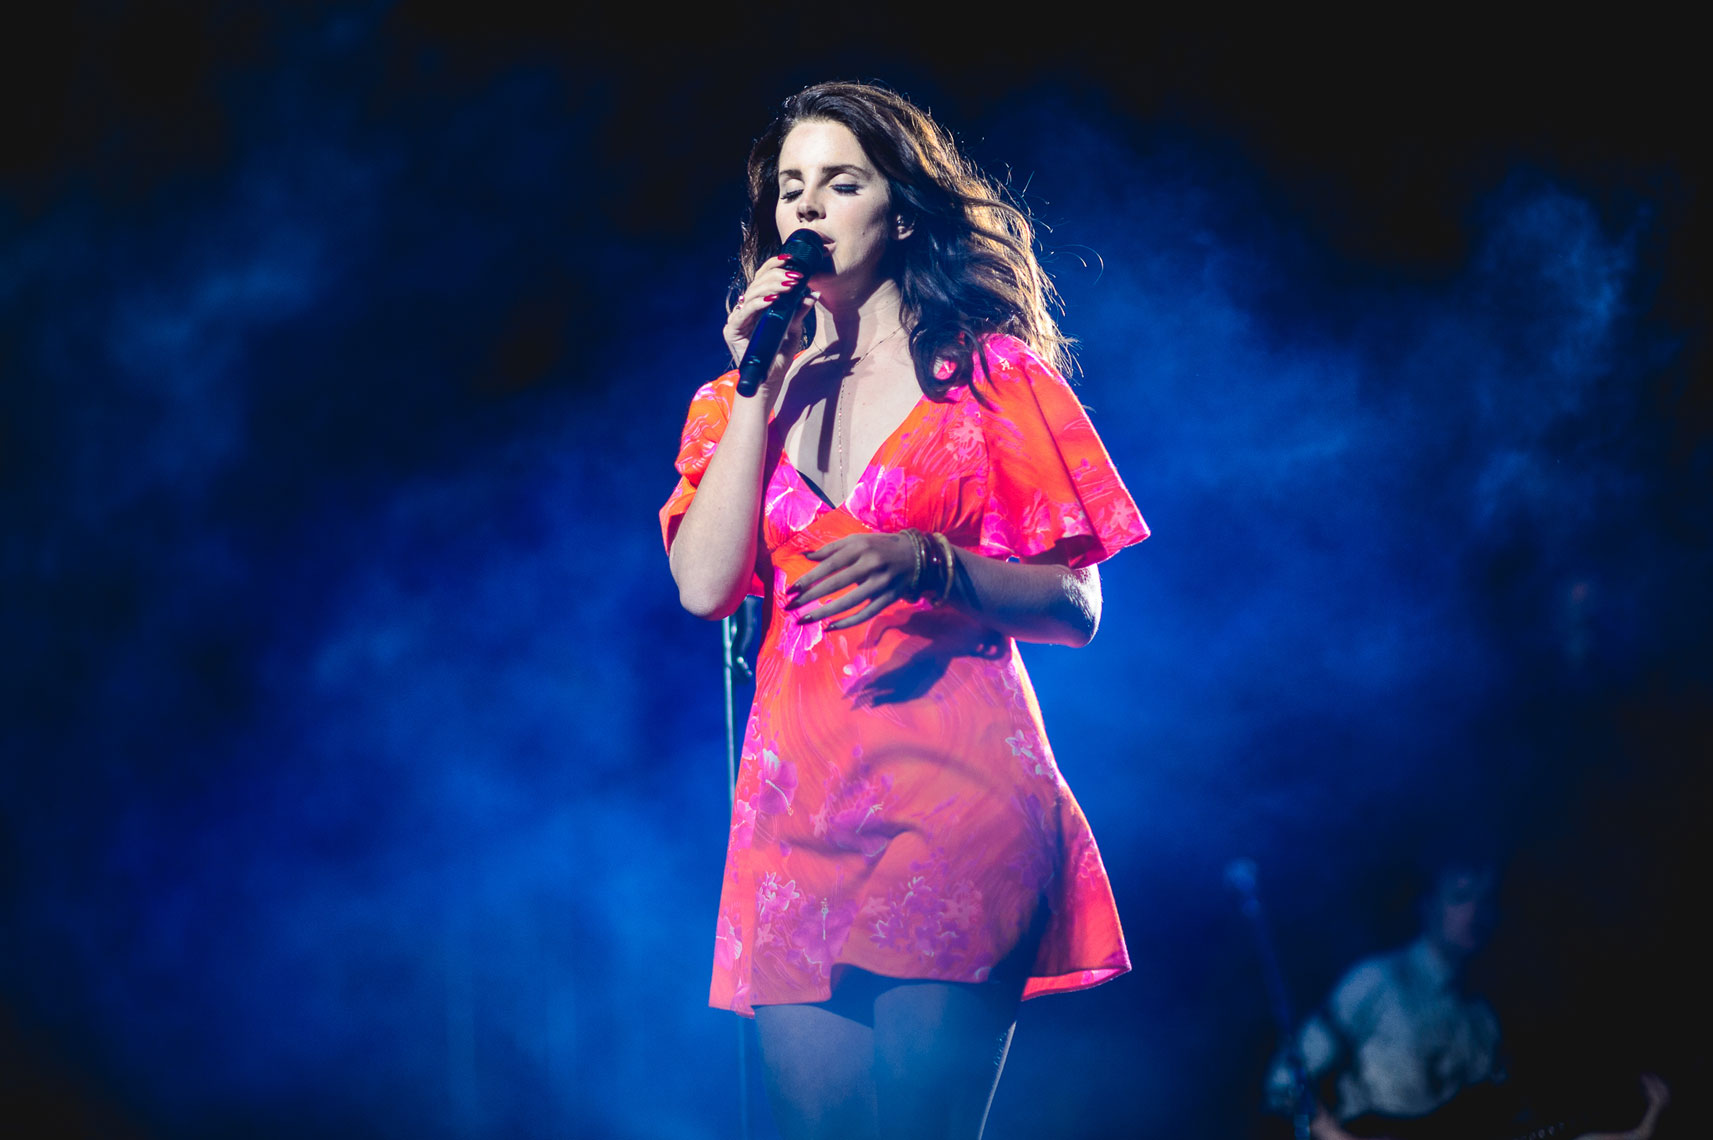 Lana Del Rey at Coachella 2014